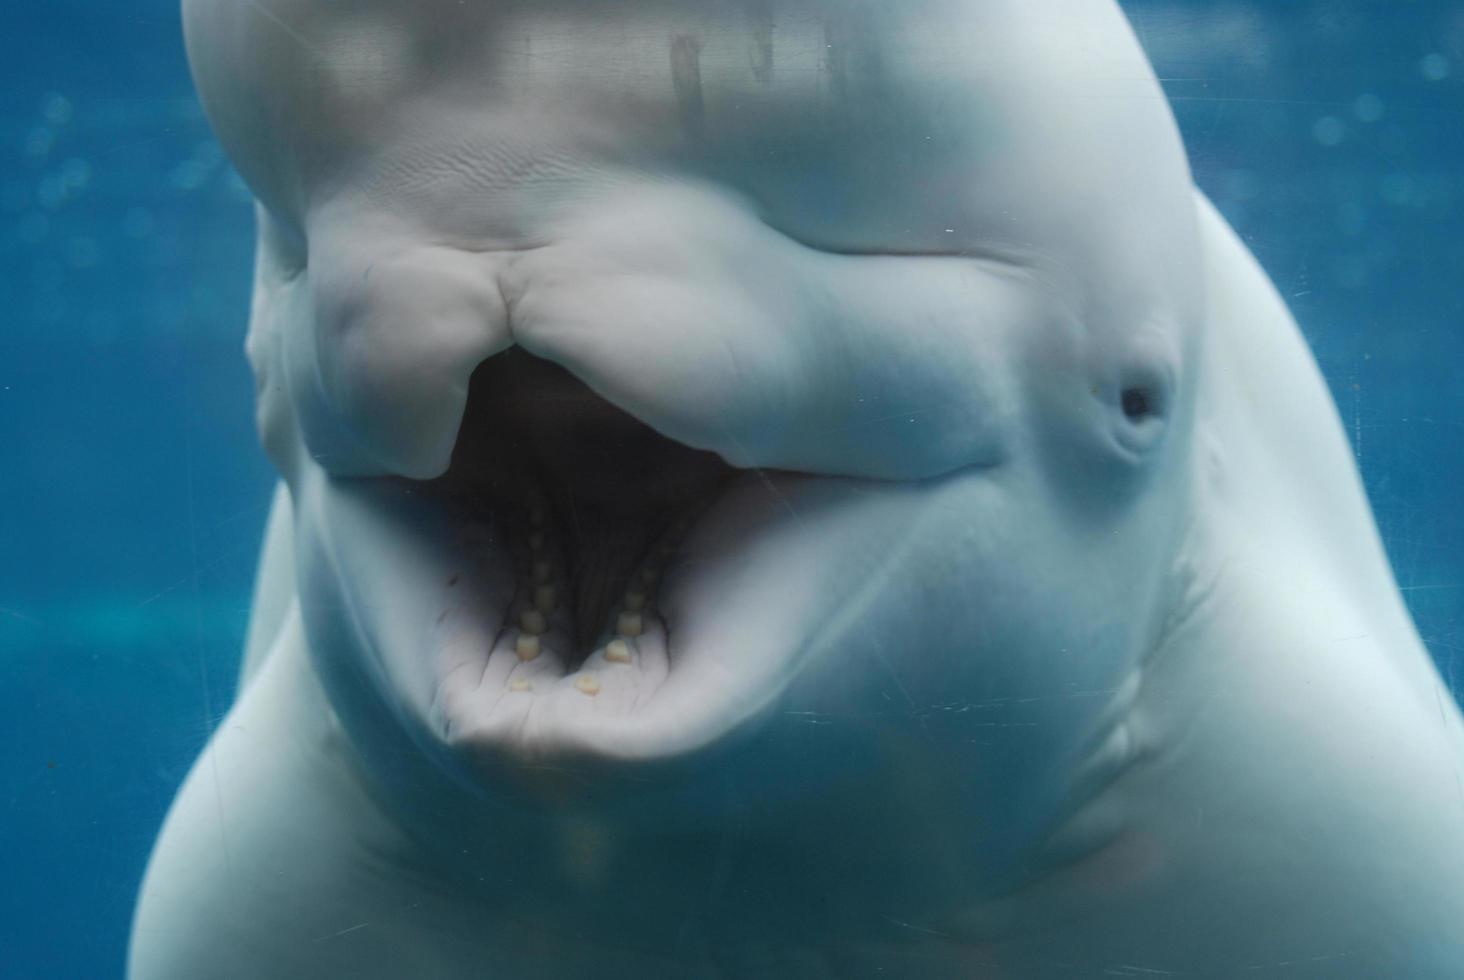 dumma munnen på en vitval vidöppen under vattnet foto